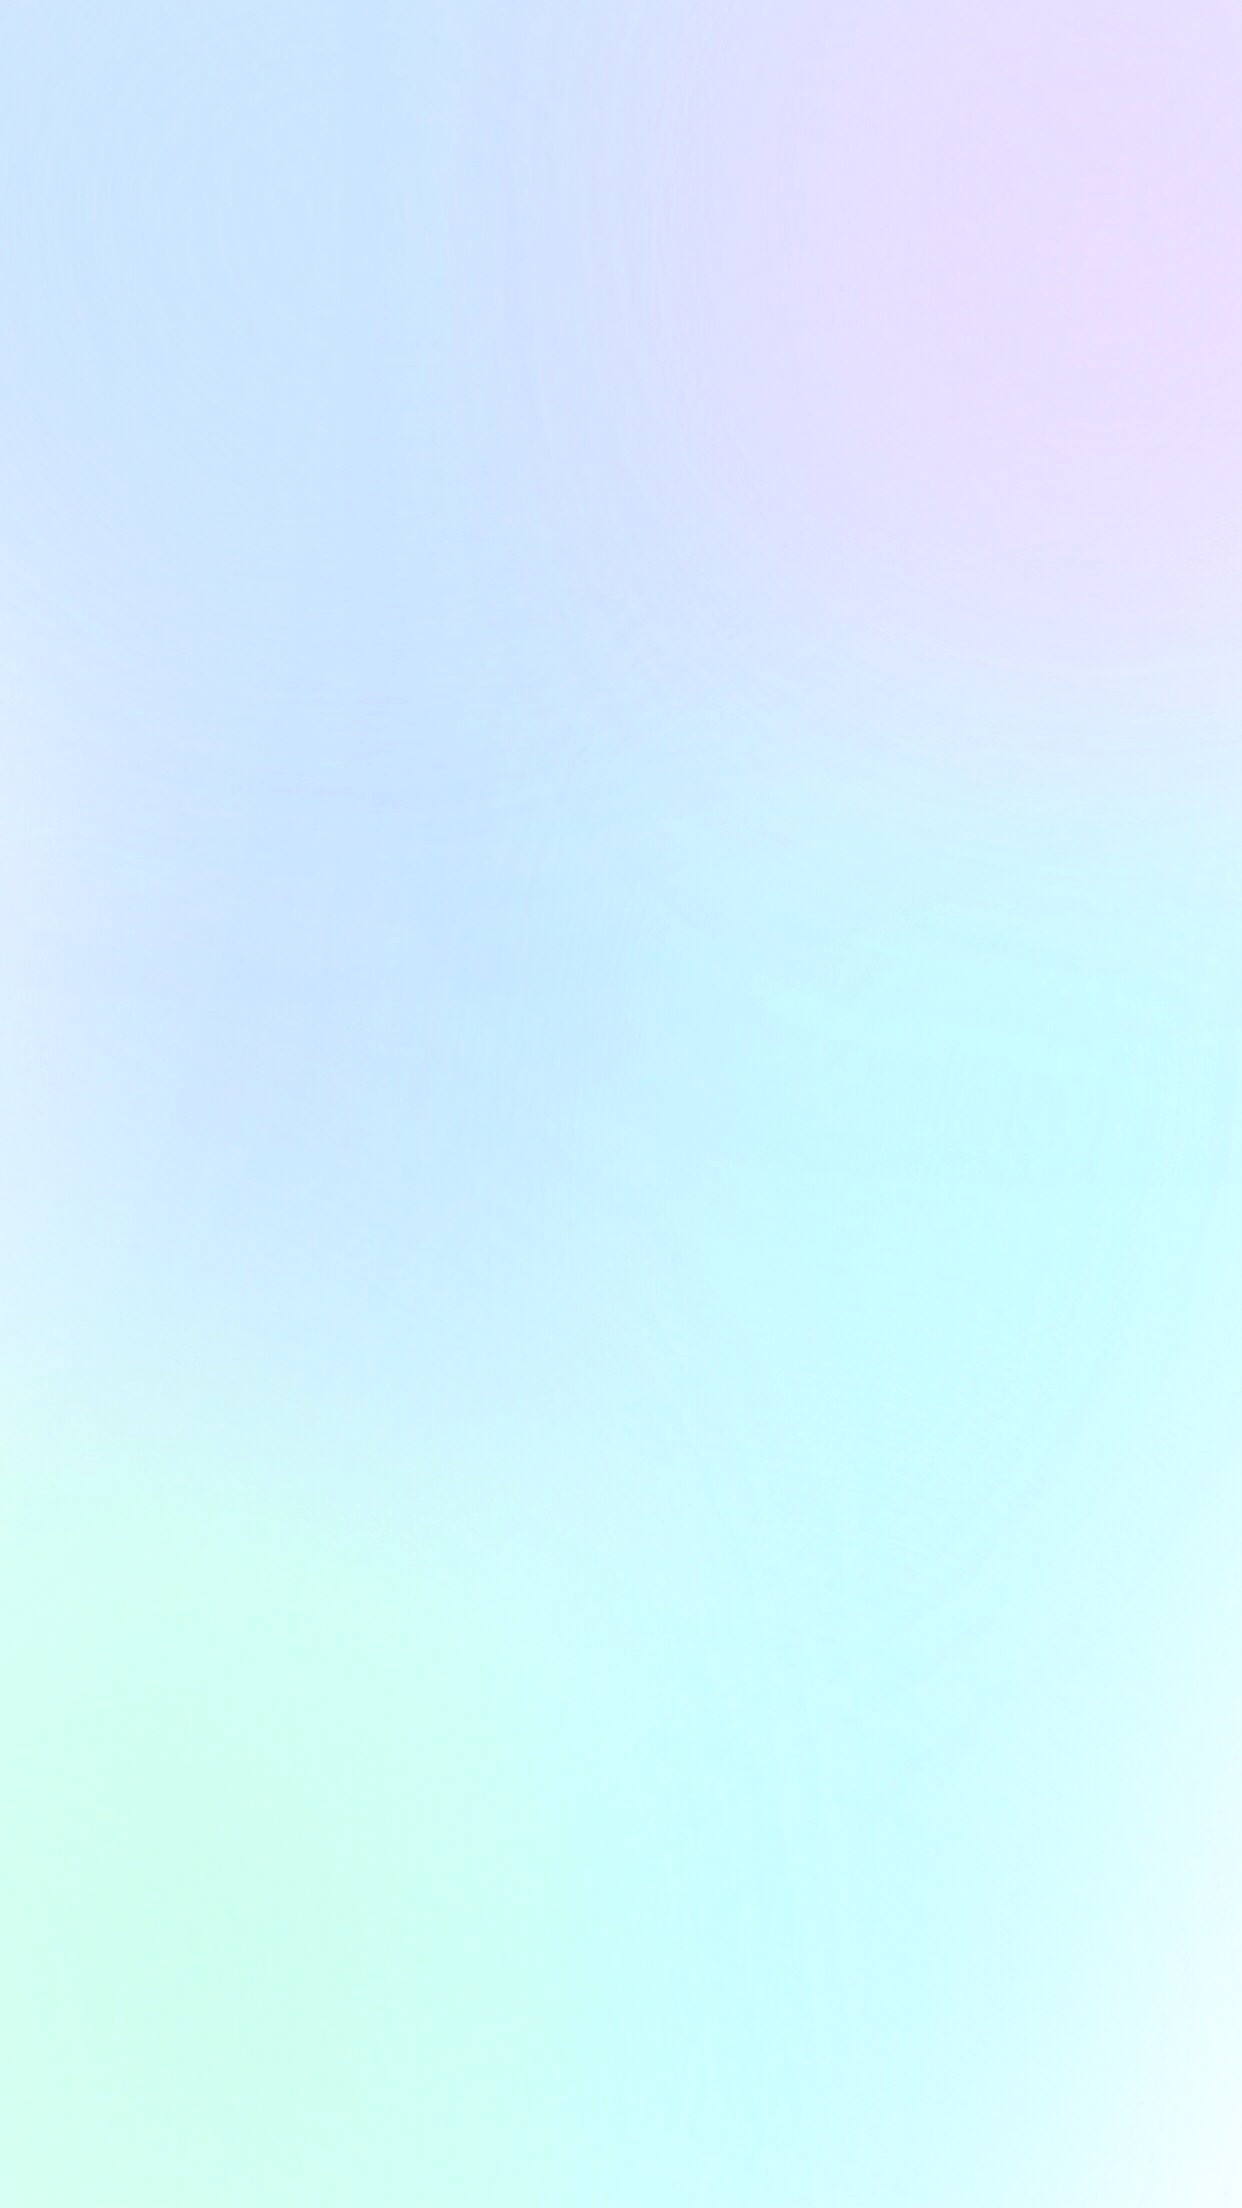 1242x2208 Pastel blue purple mint ombre (gradient) phone wallpaper